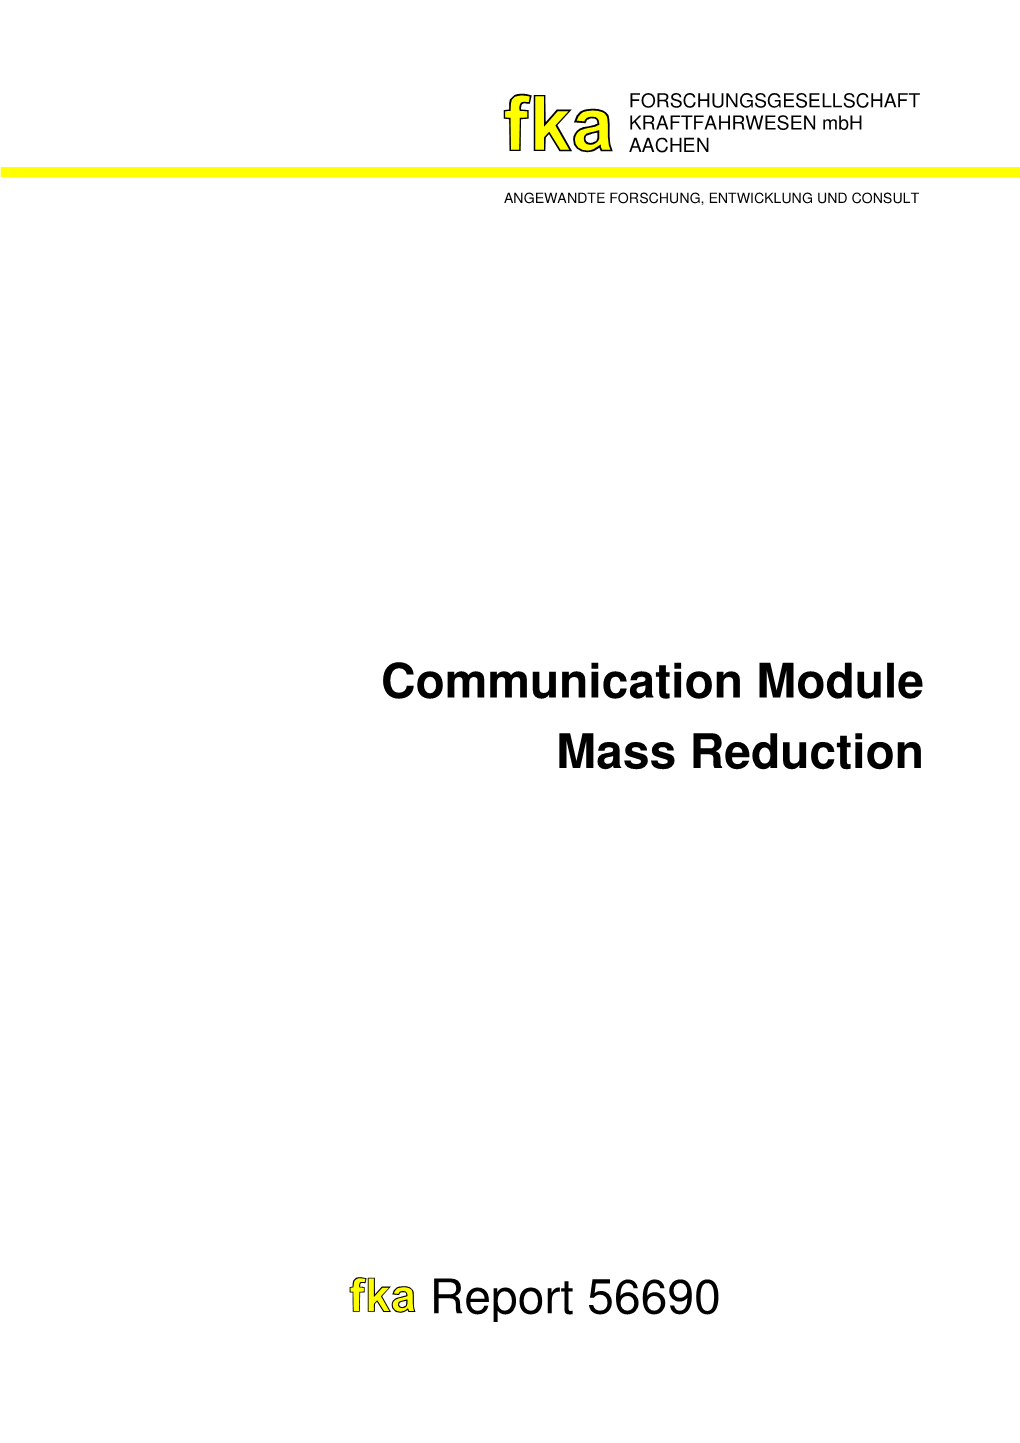 Report 56690 Communication Module Mass Reduction